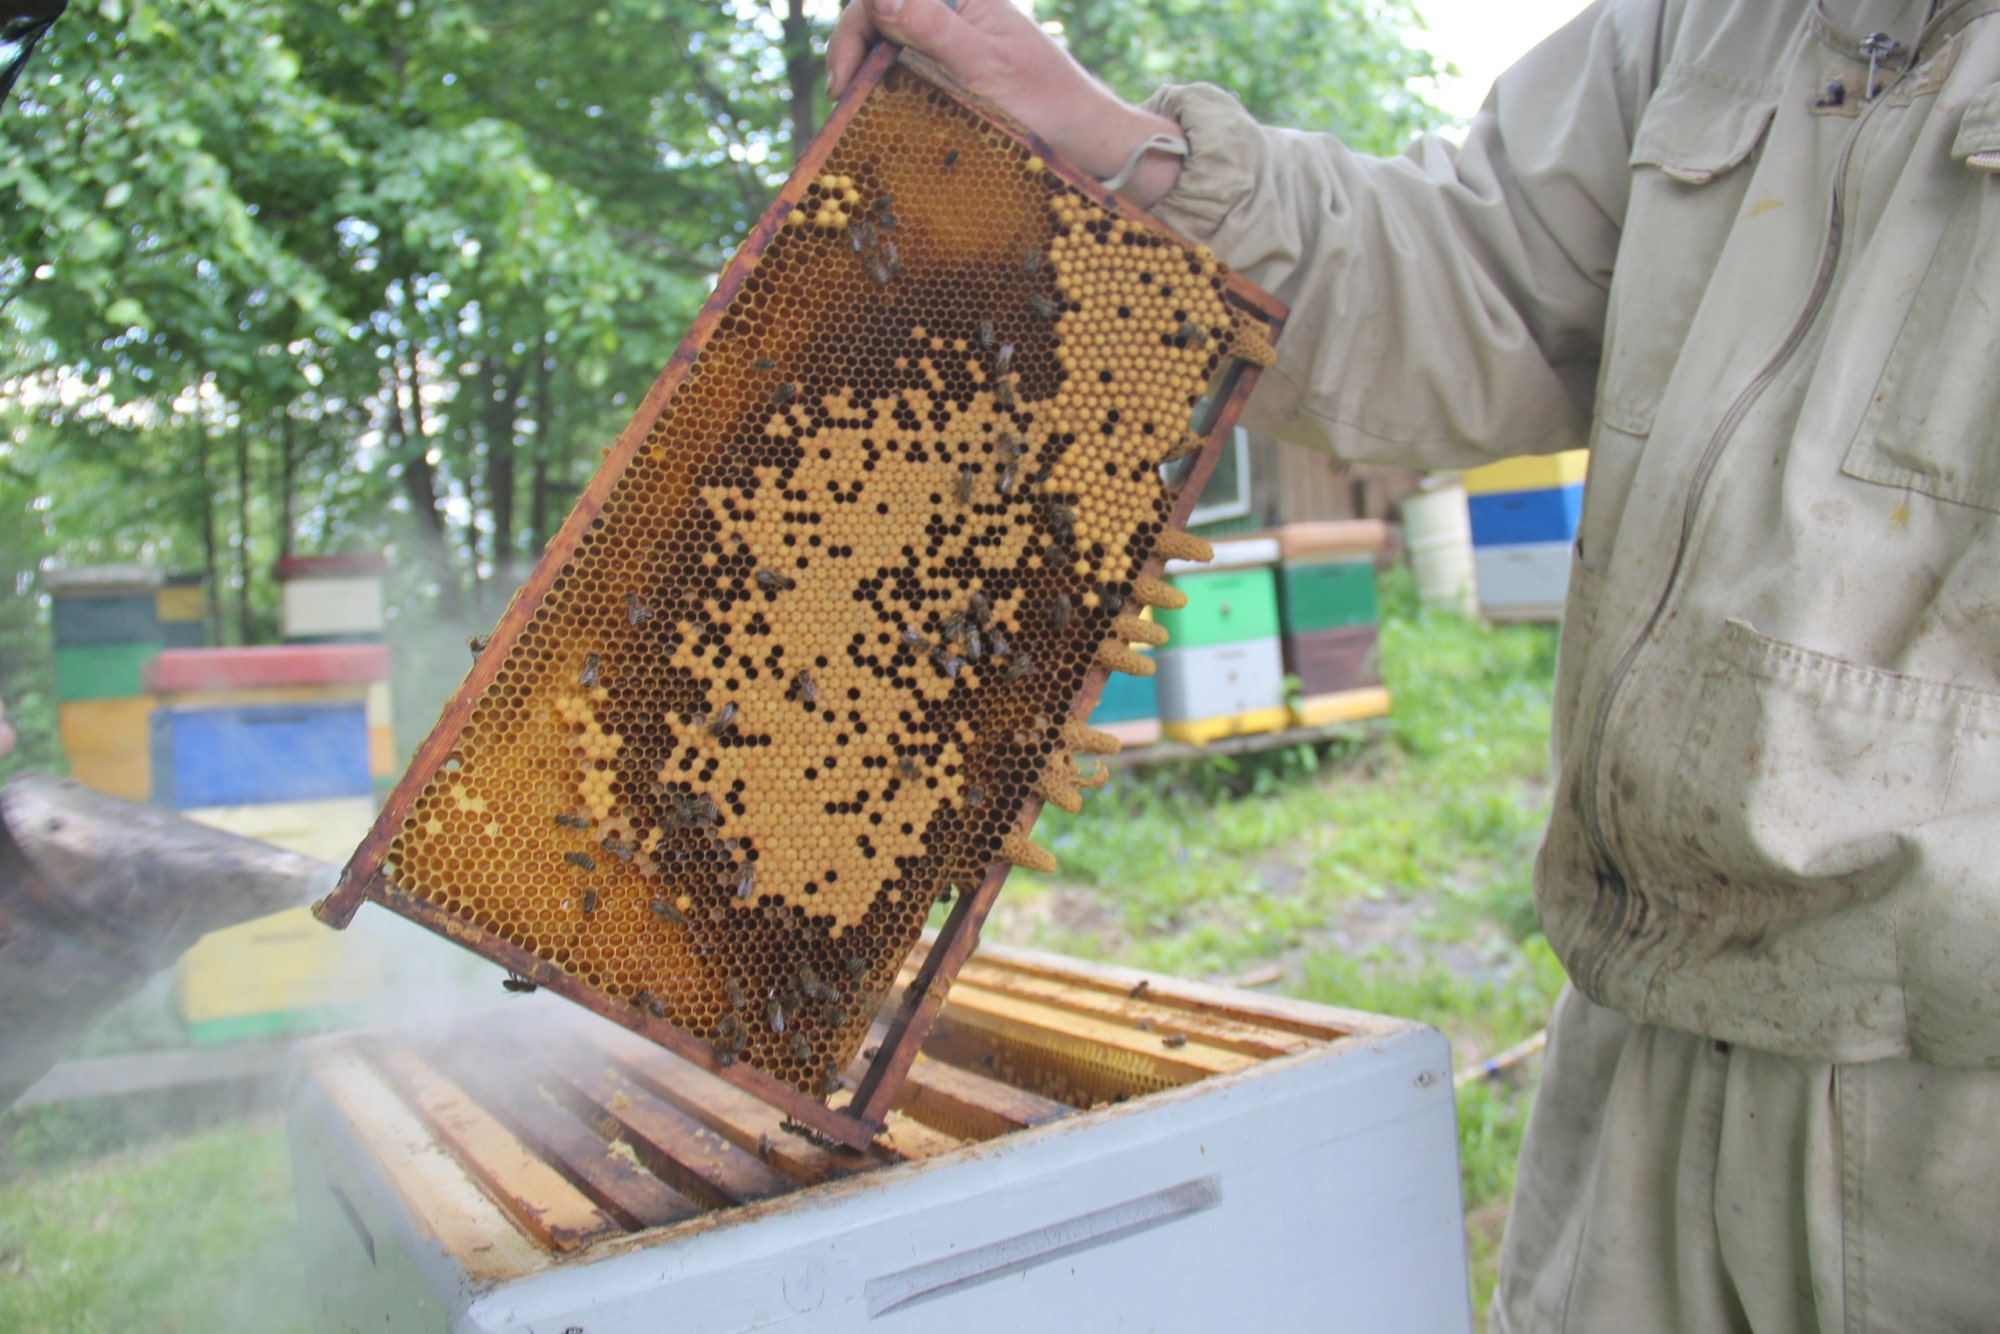 В мире животных, Томские новости, мед пчелы пчеловоды интересные новости Томска пчелосемьи У томских пчеловодов есть потенциал удвоить число пчелосемей в регионе — власти